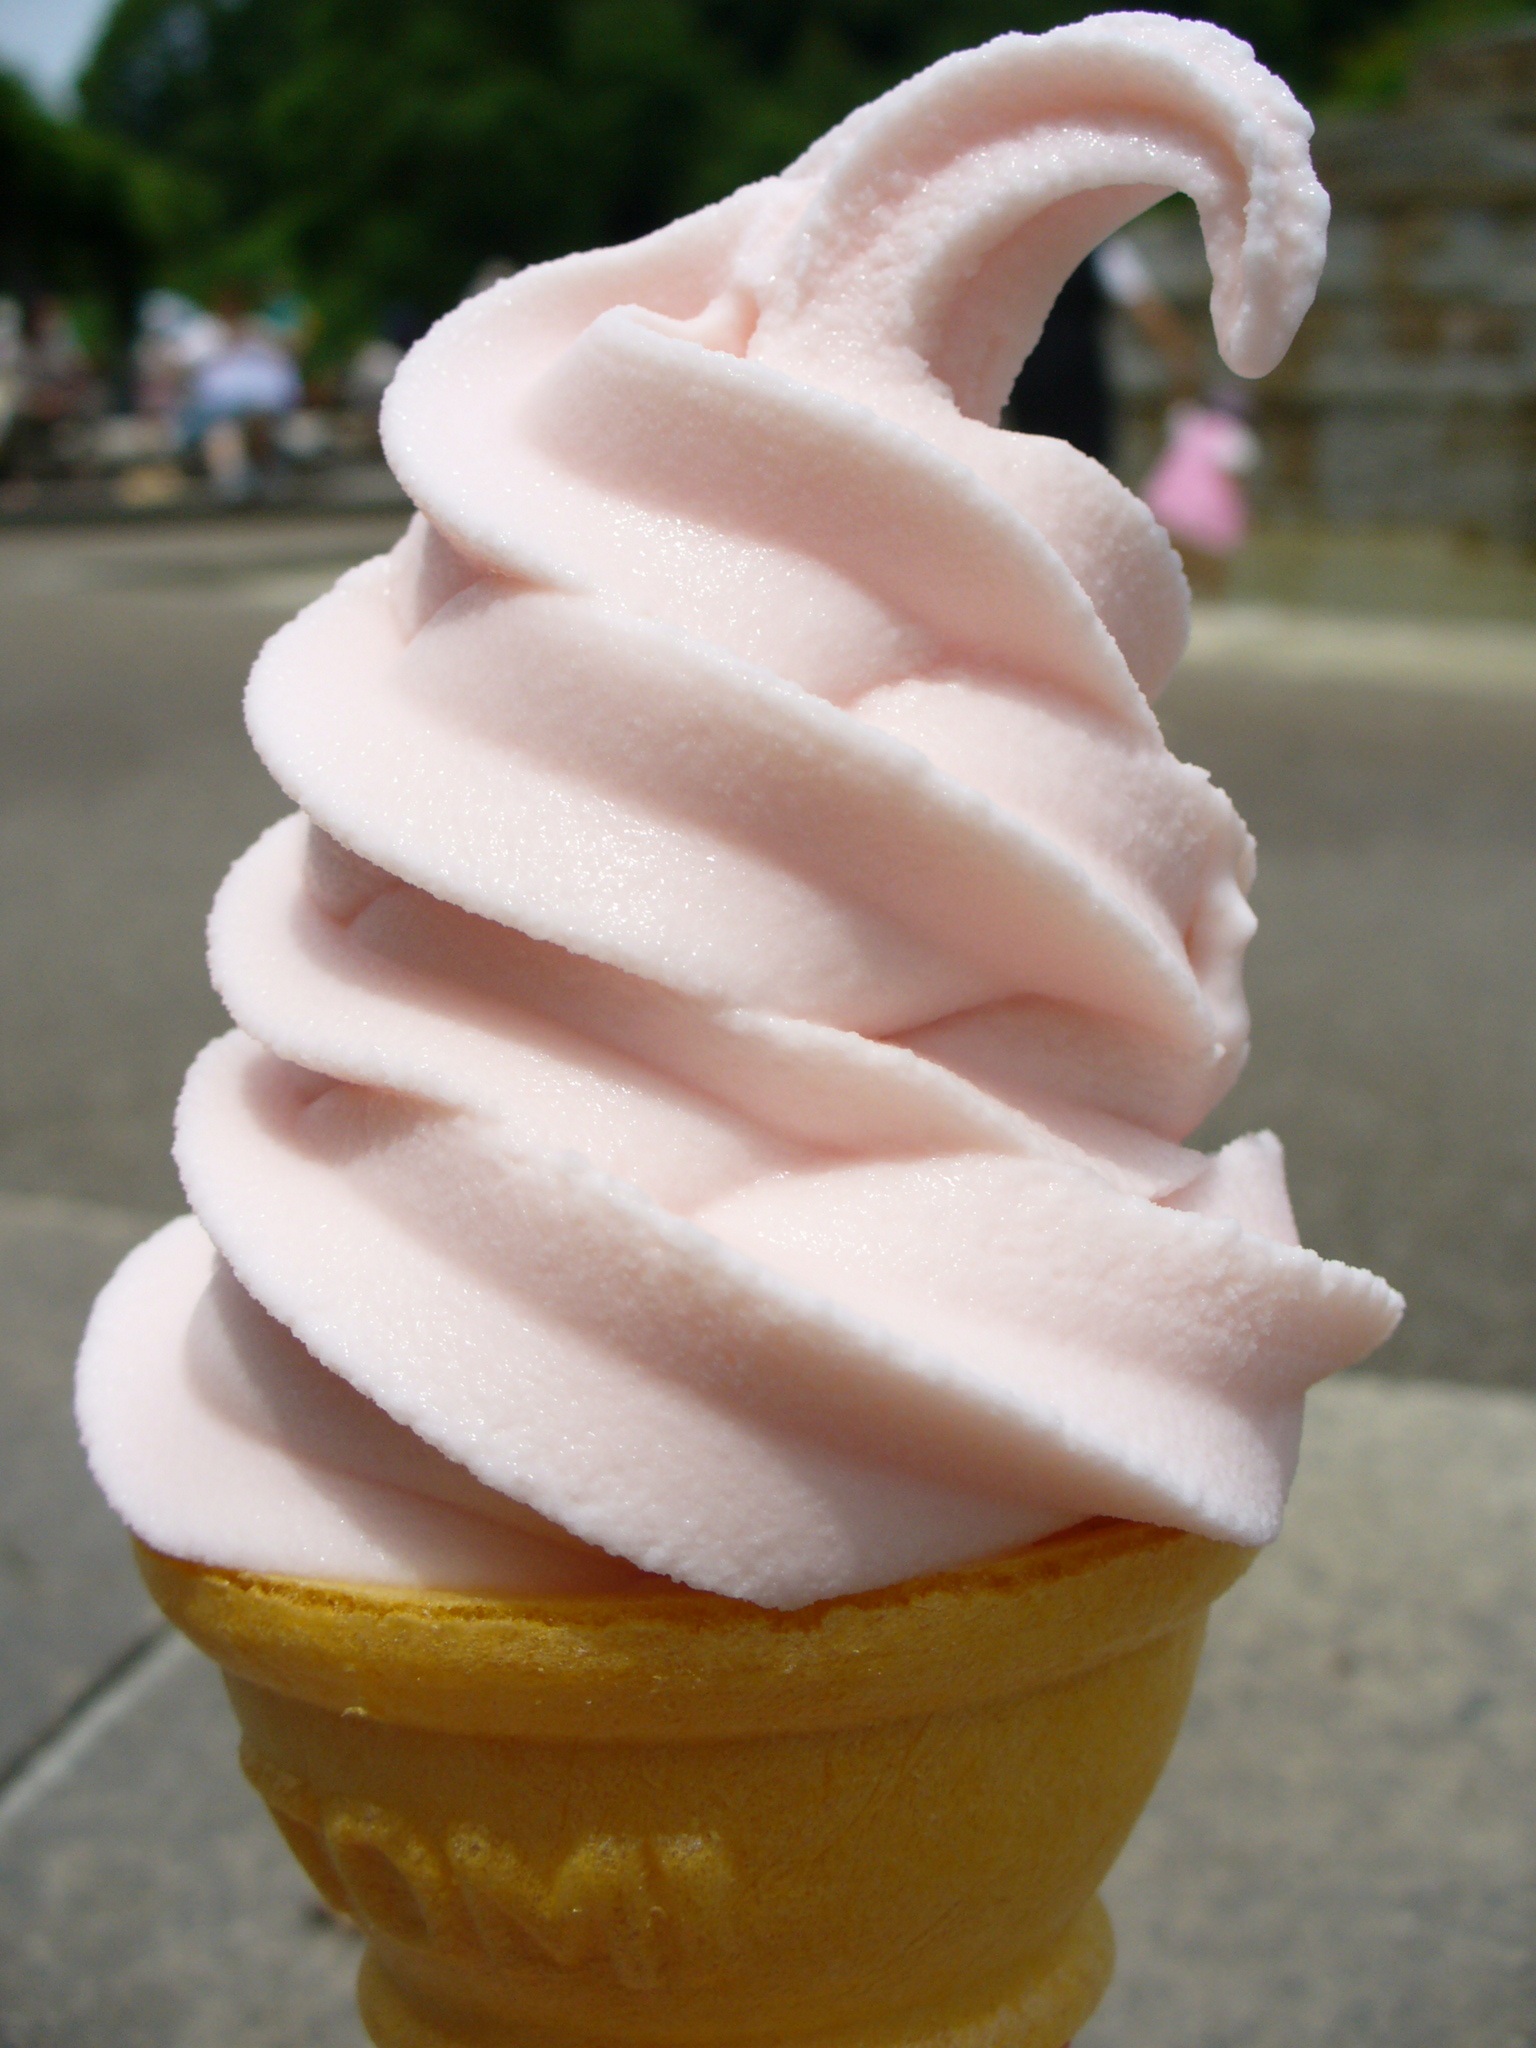 Soft ice cream cone photo